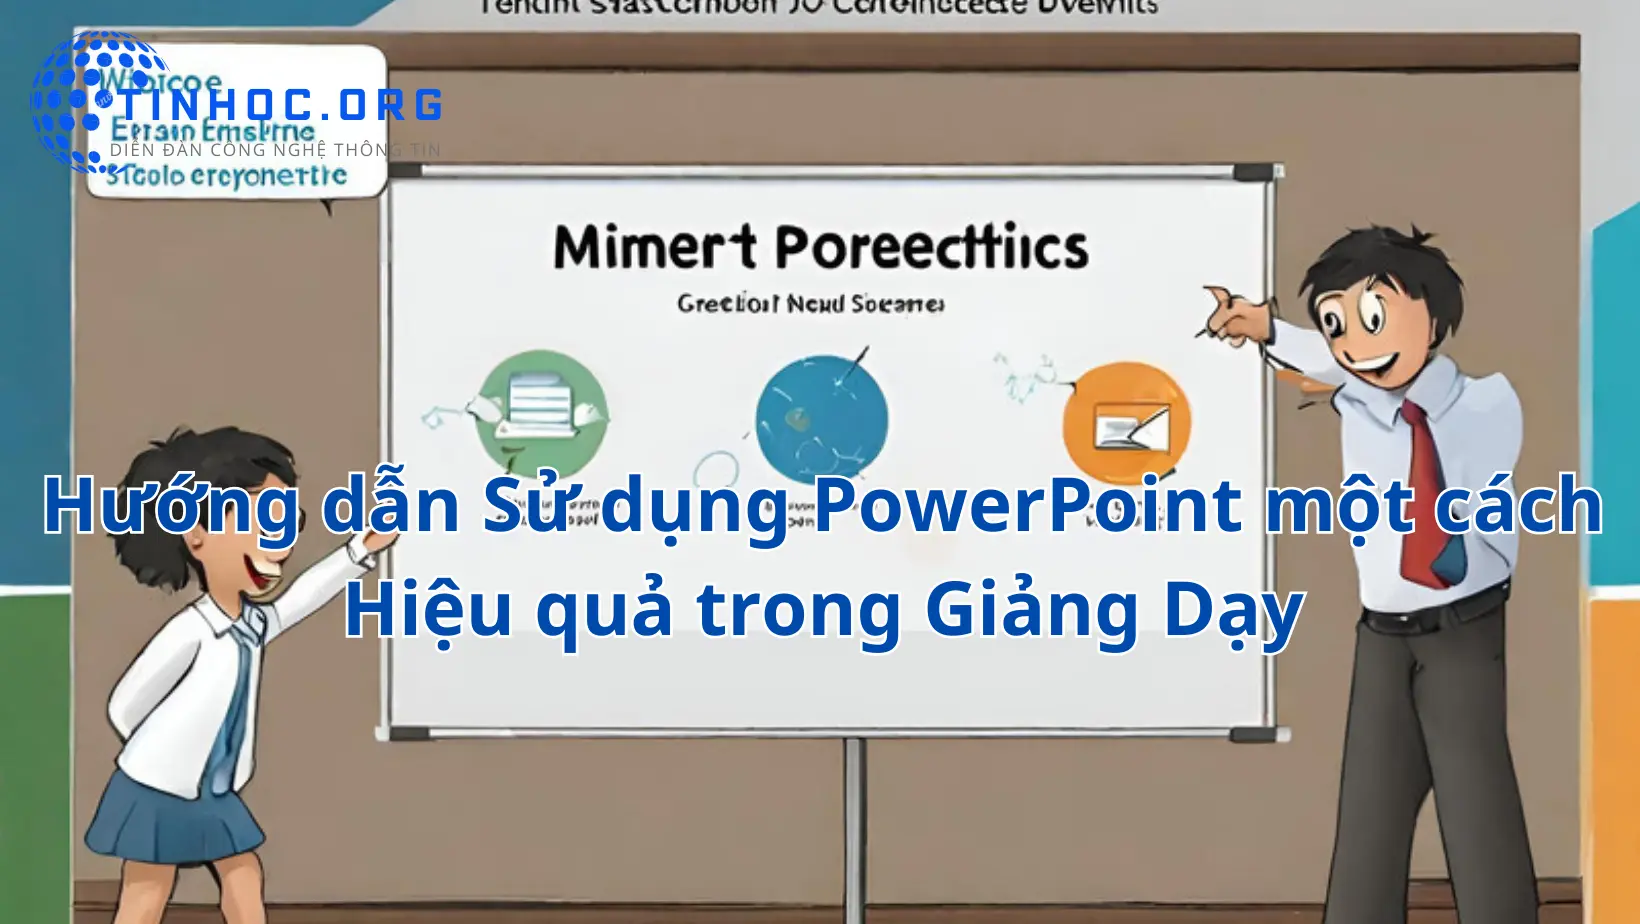 Hướng dẫn sử dụng PowerPoint hiệu quả trong giảng dạy